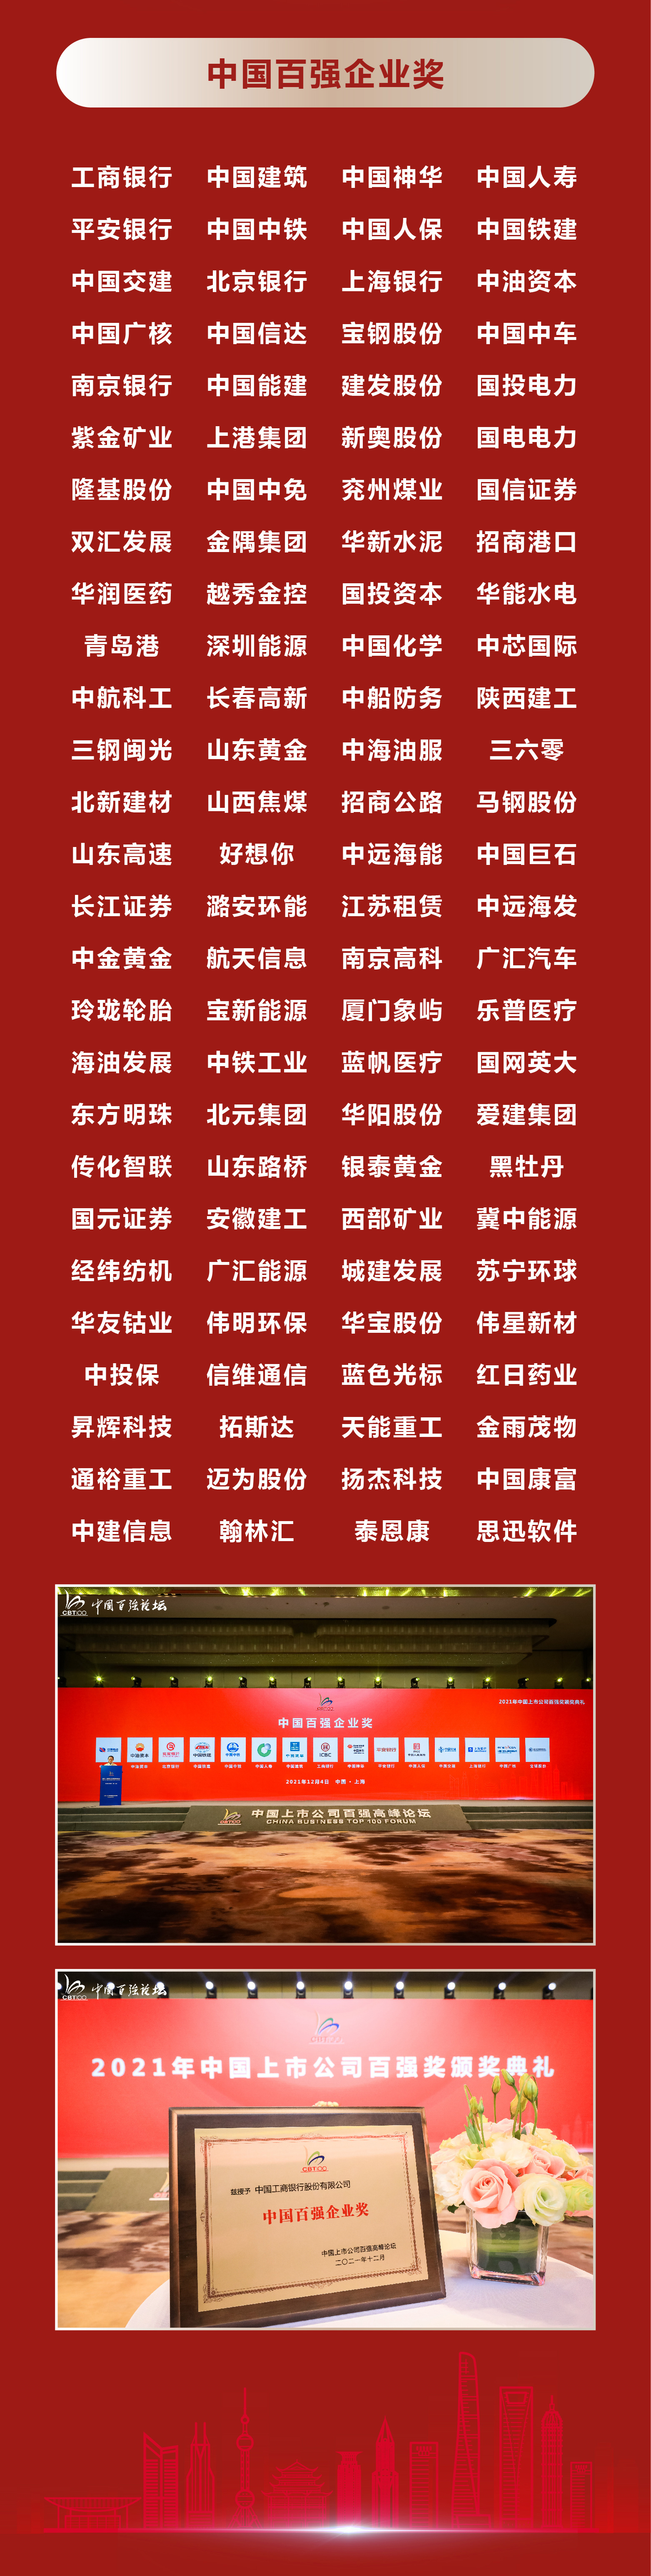 2021年中国上市公司百强奖获奖名单(图8)